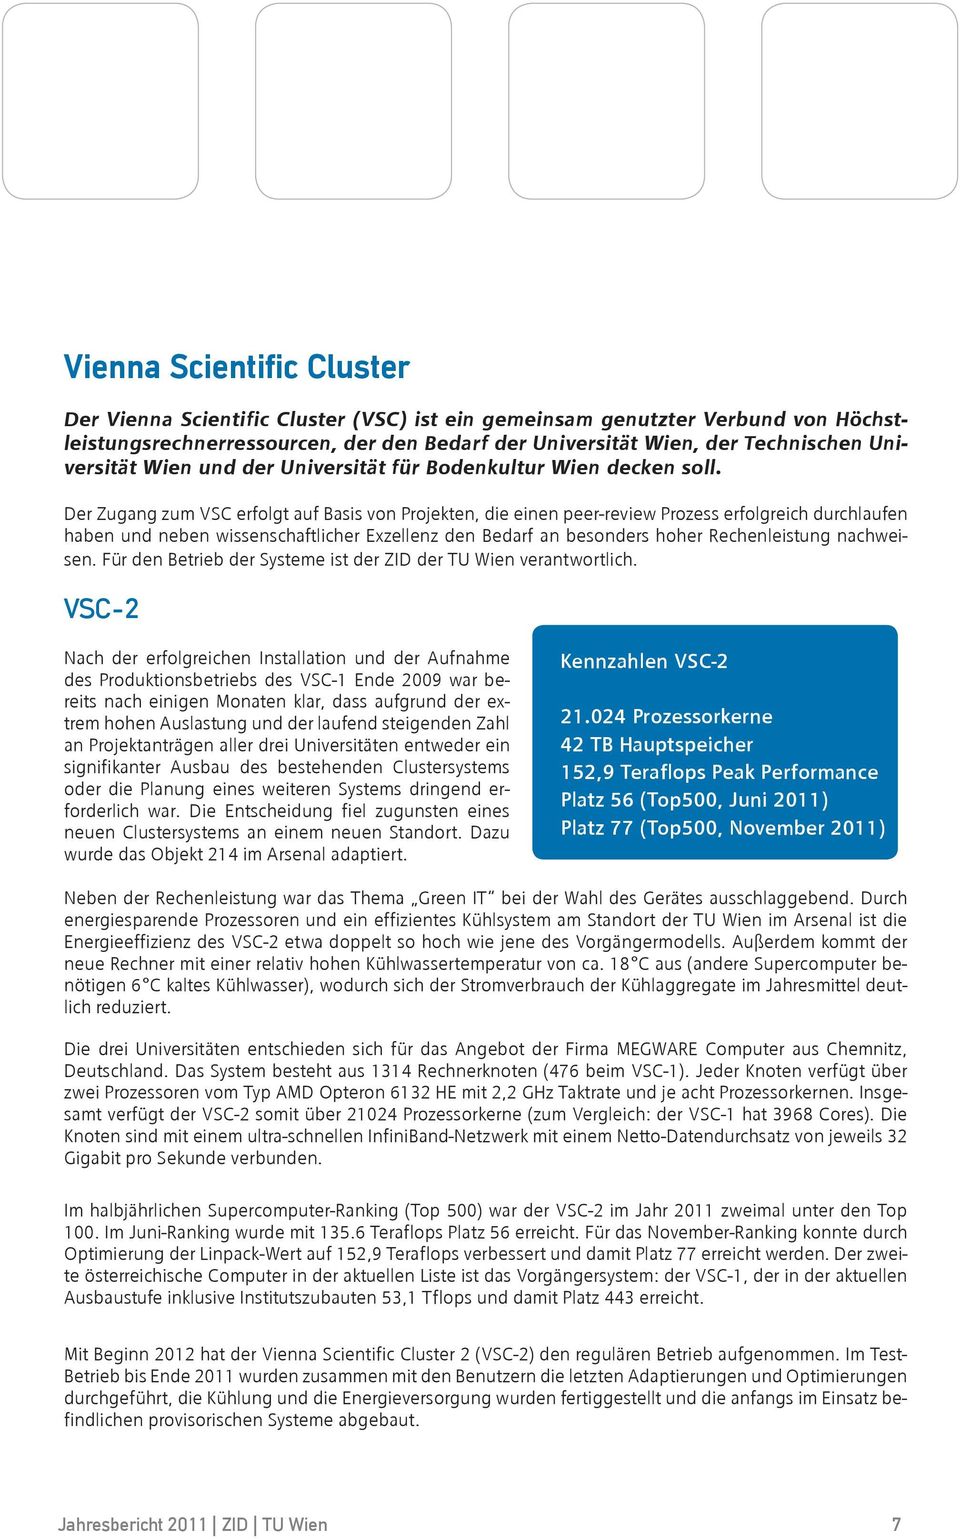 Der Zugang zum VSC erfolgt auf Basis von Projekten, die einen peer-review Prozess erfolgreich durchlaufen haben und neben wissenschaftlicher Exzellenz den Bedarf an besonders hoher Rechenleistung